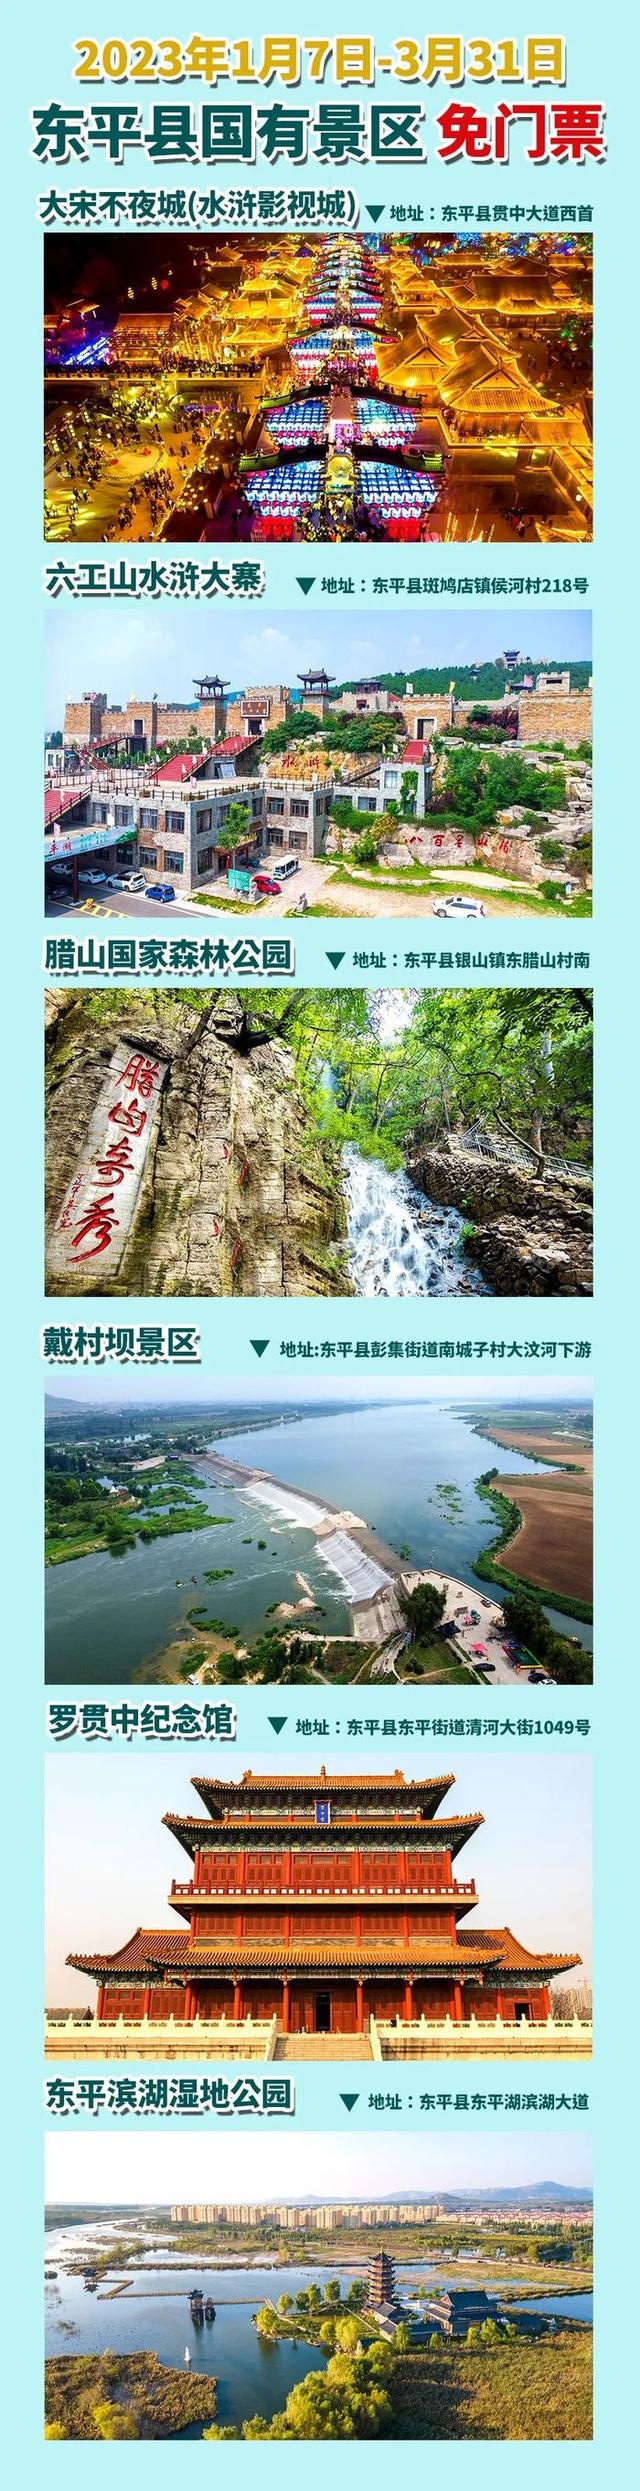 山东省|大宋不夜城等六大景点免票日期延长至3月31日